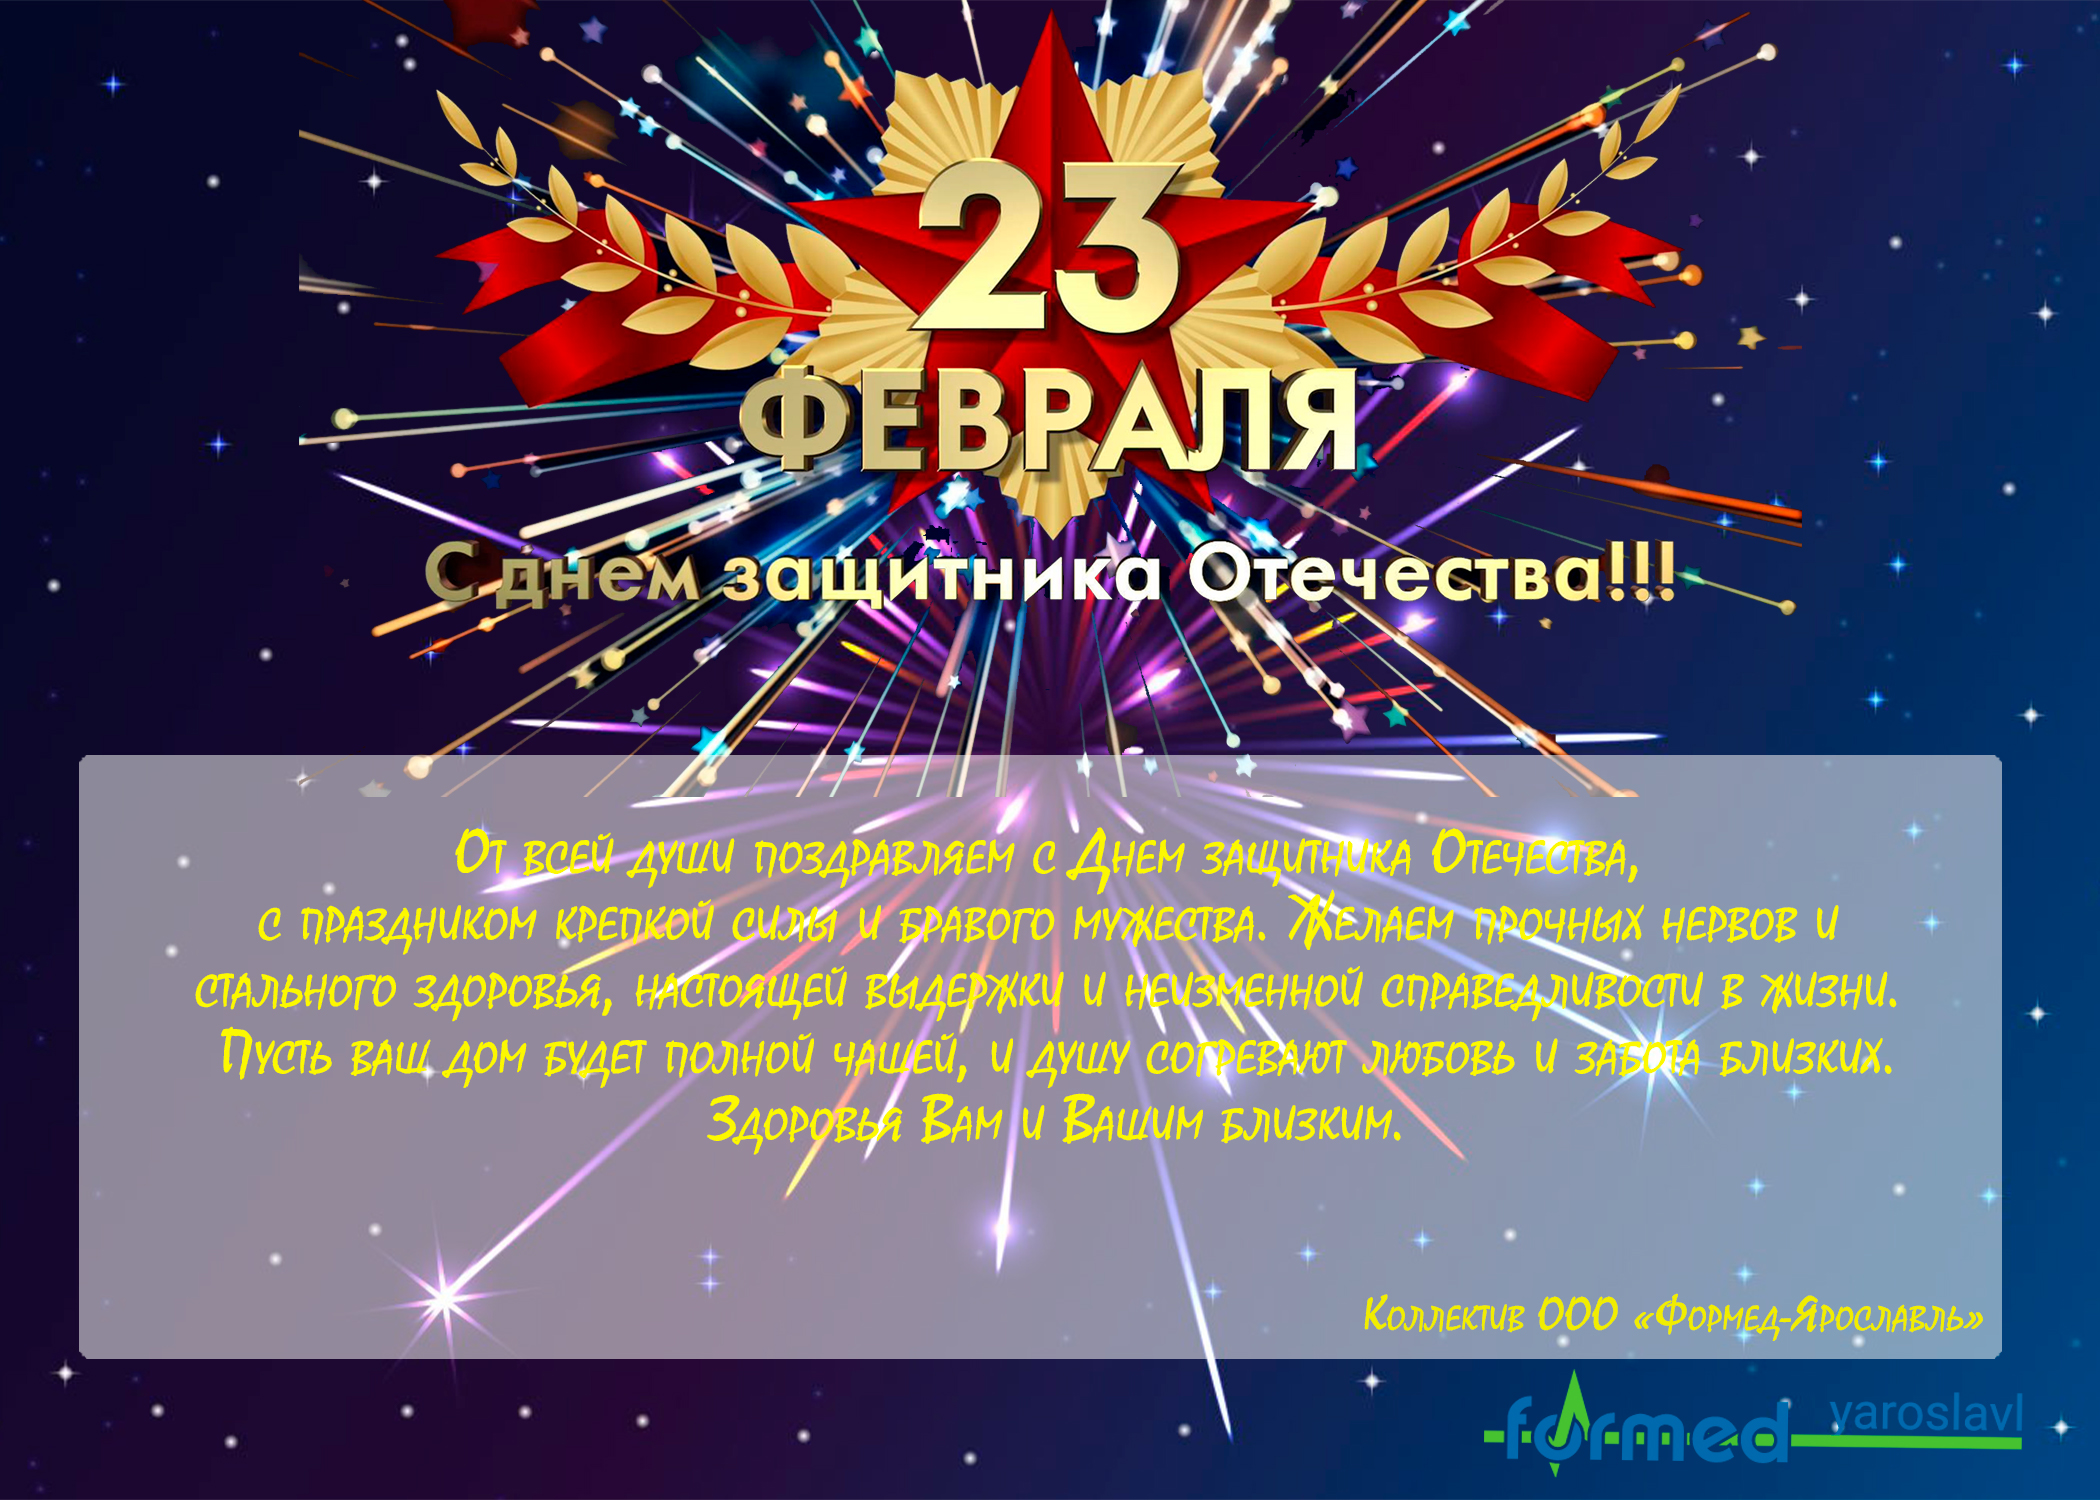 коллектив ООО "Формед-Ярославль" поздравляет с Днем защитника Отечества